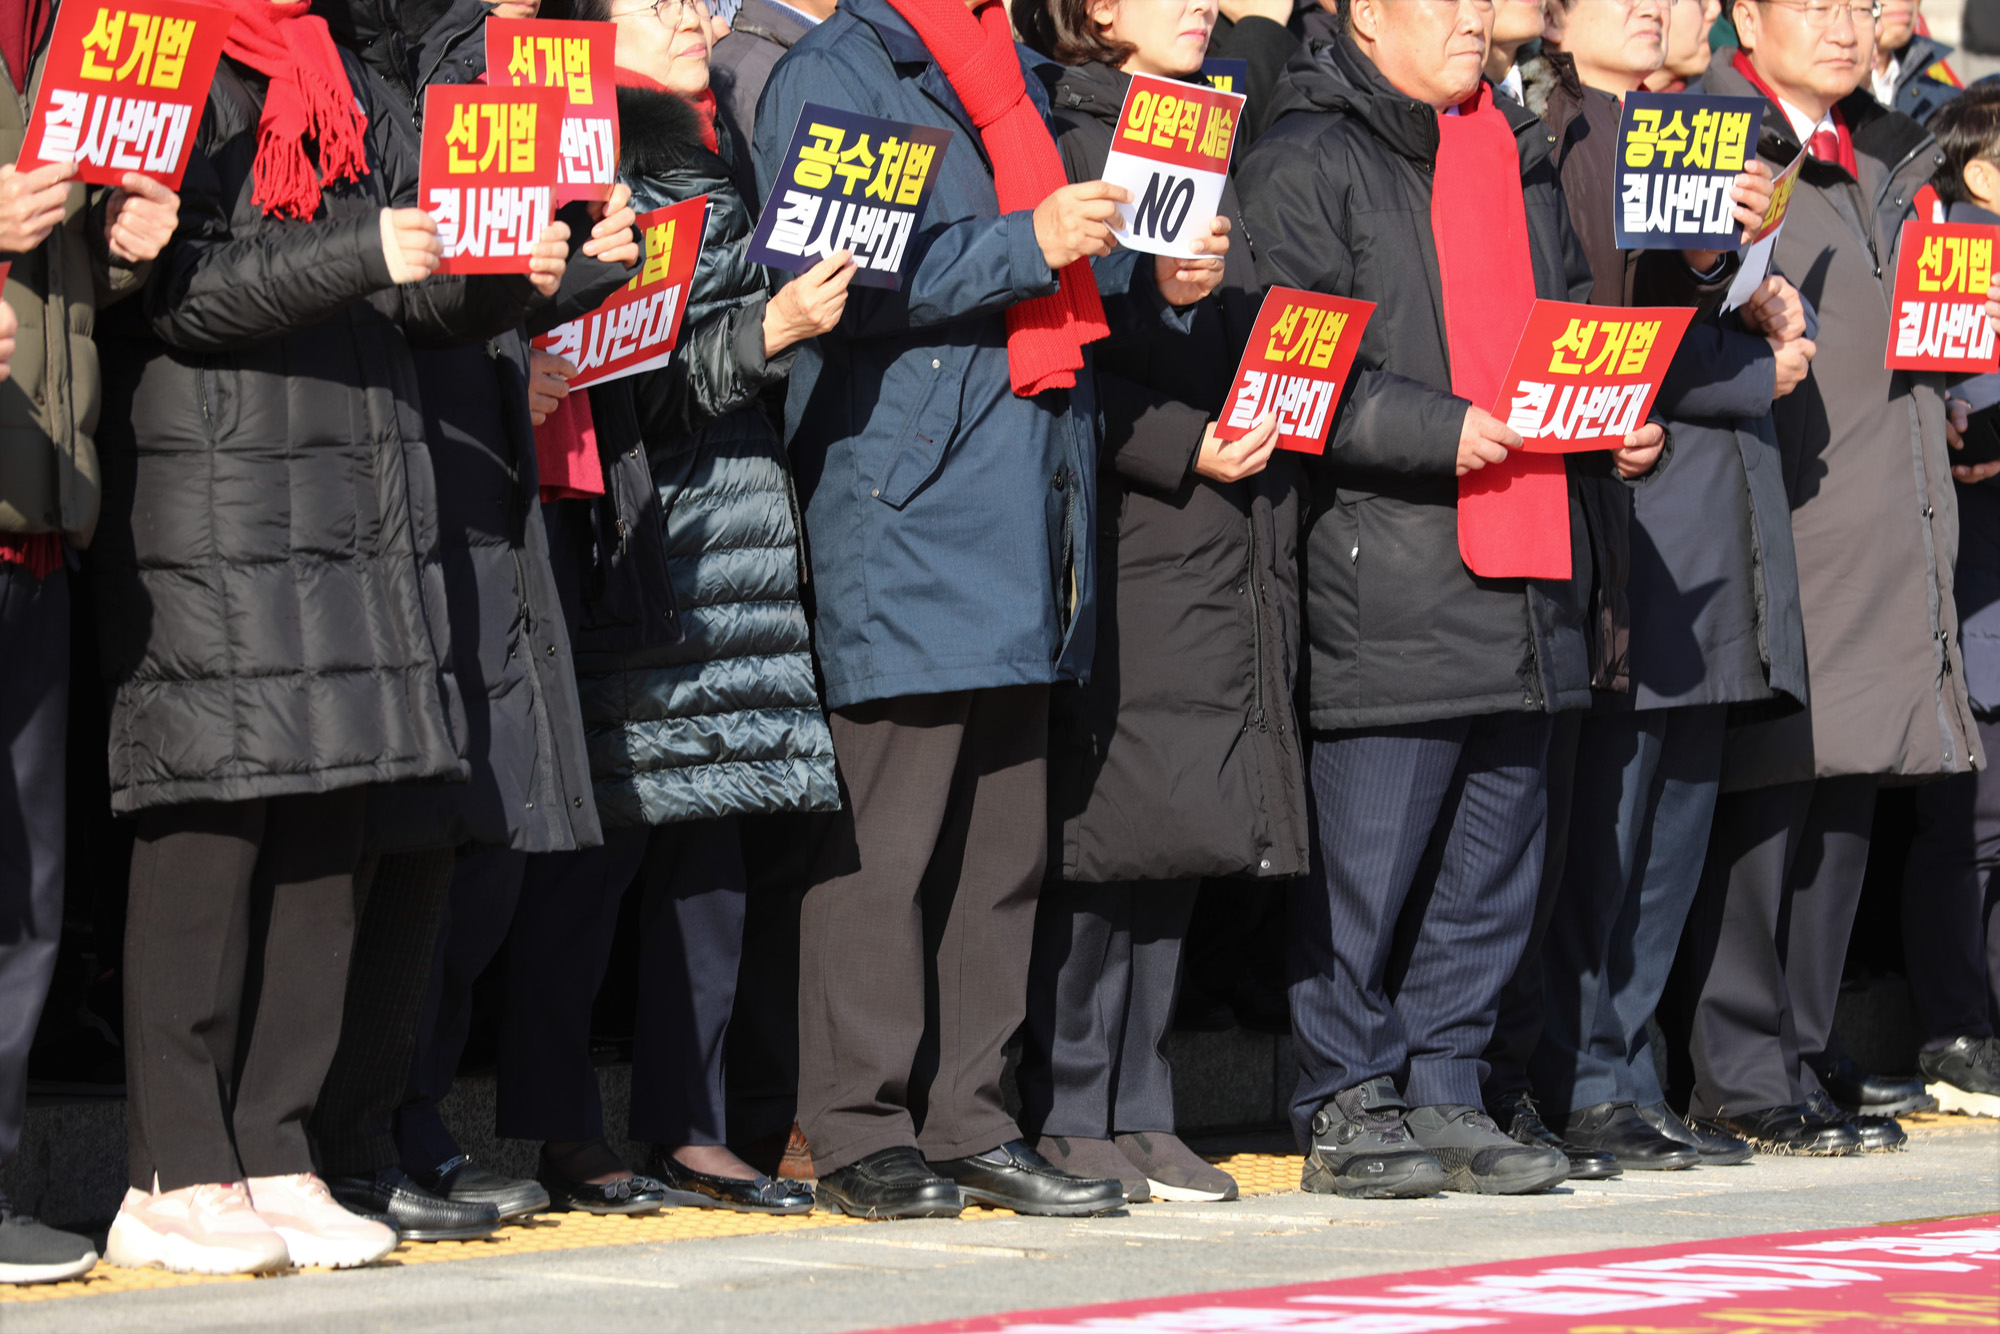 자유한국당;공수처법선거법날치기저지규탄대회;황교안대표